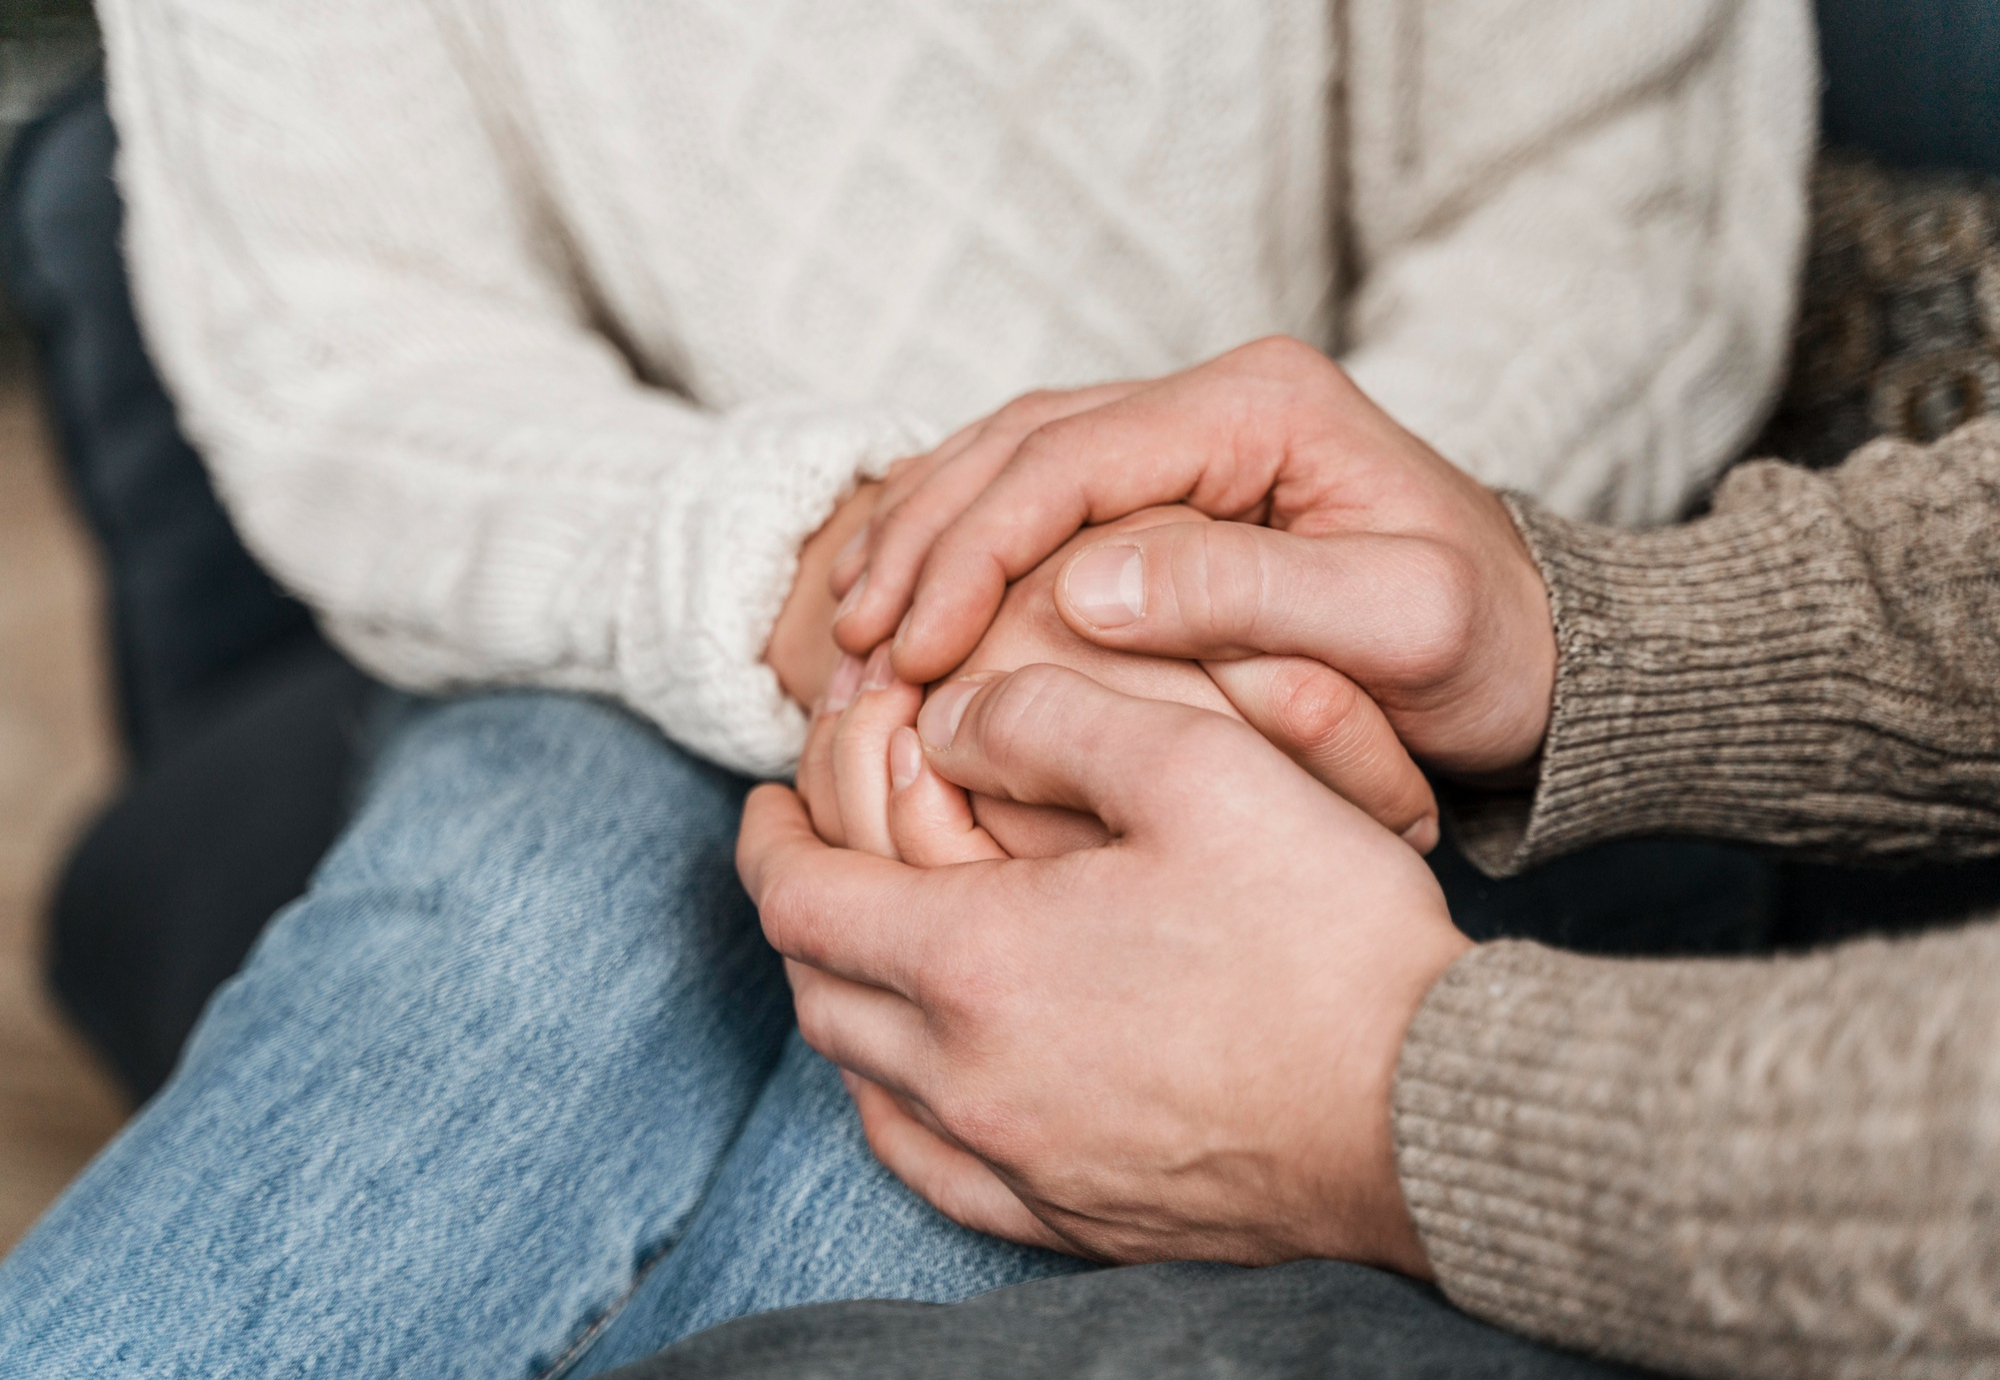 Deux personnes se tenant la main pour se soutenir mutuellement pendant une période de deuil